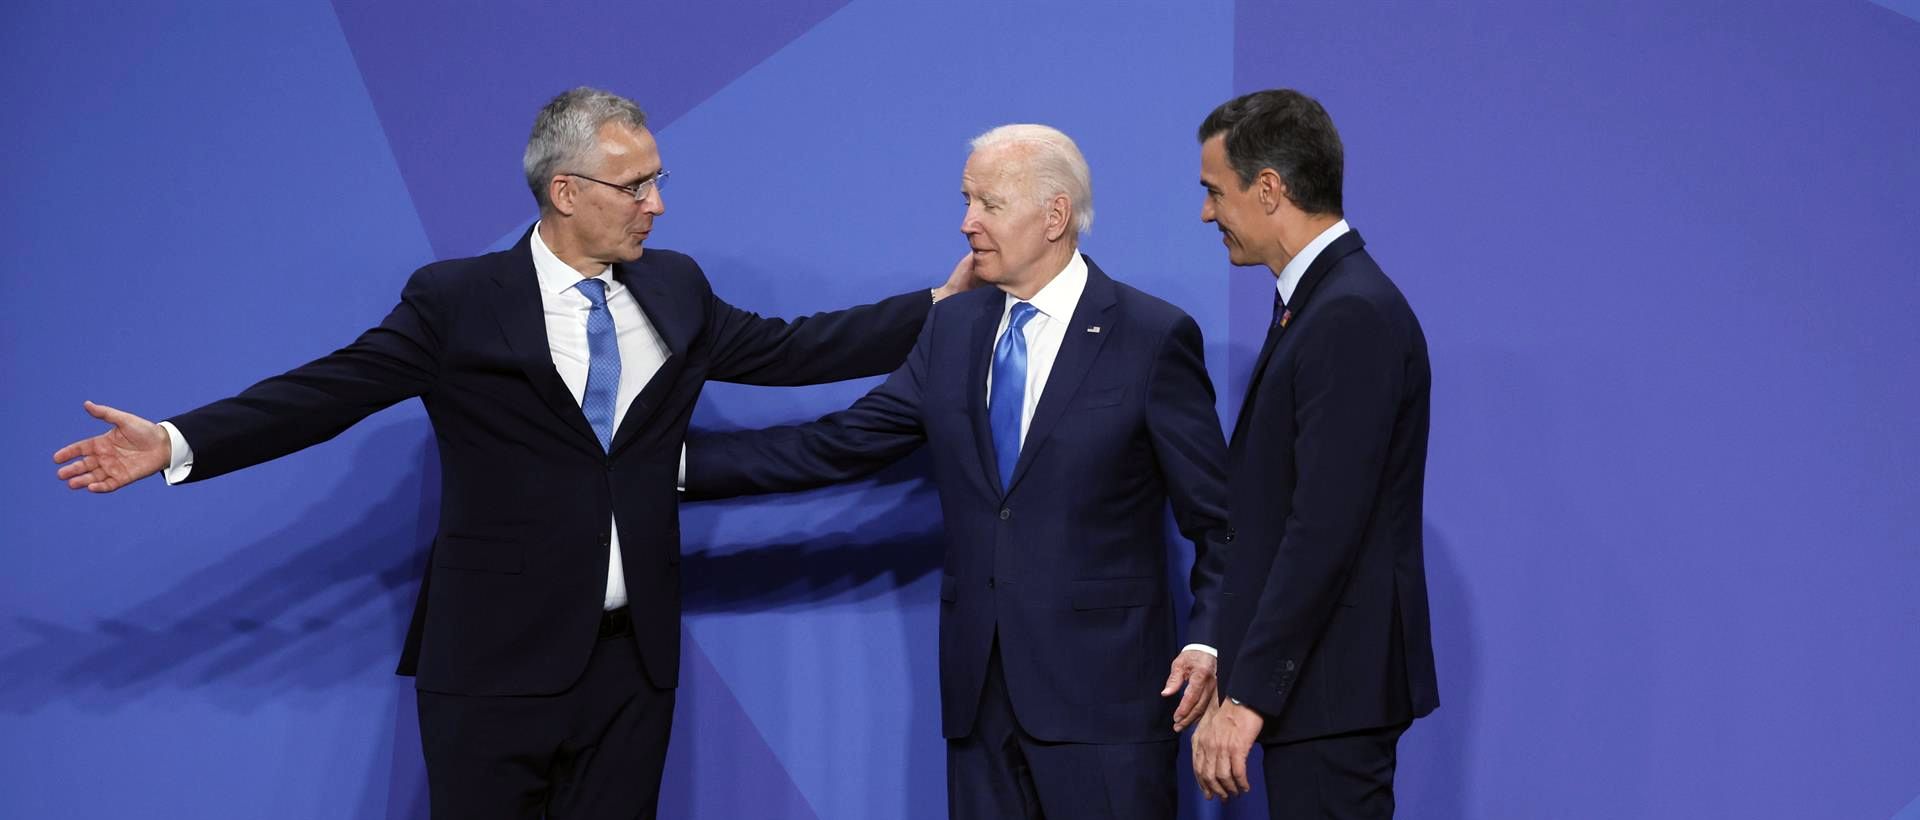 Stolteberg con Biden y Sánchez